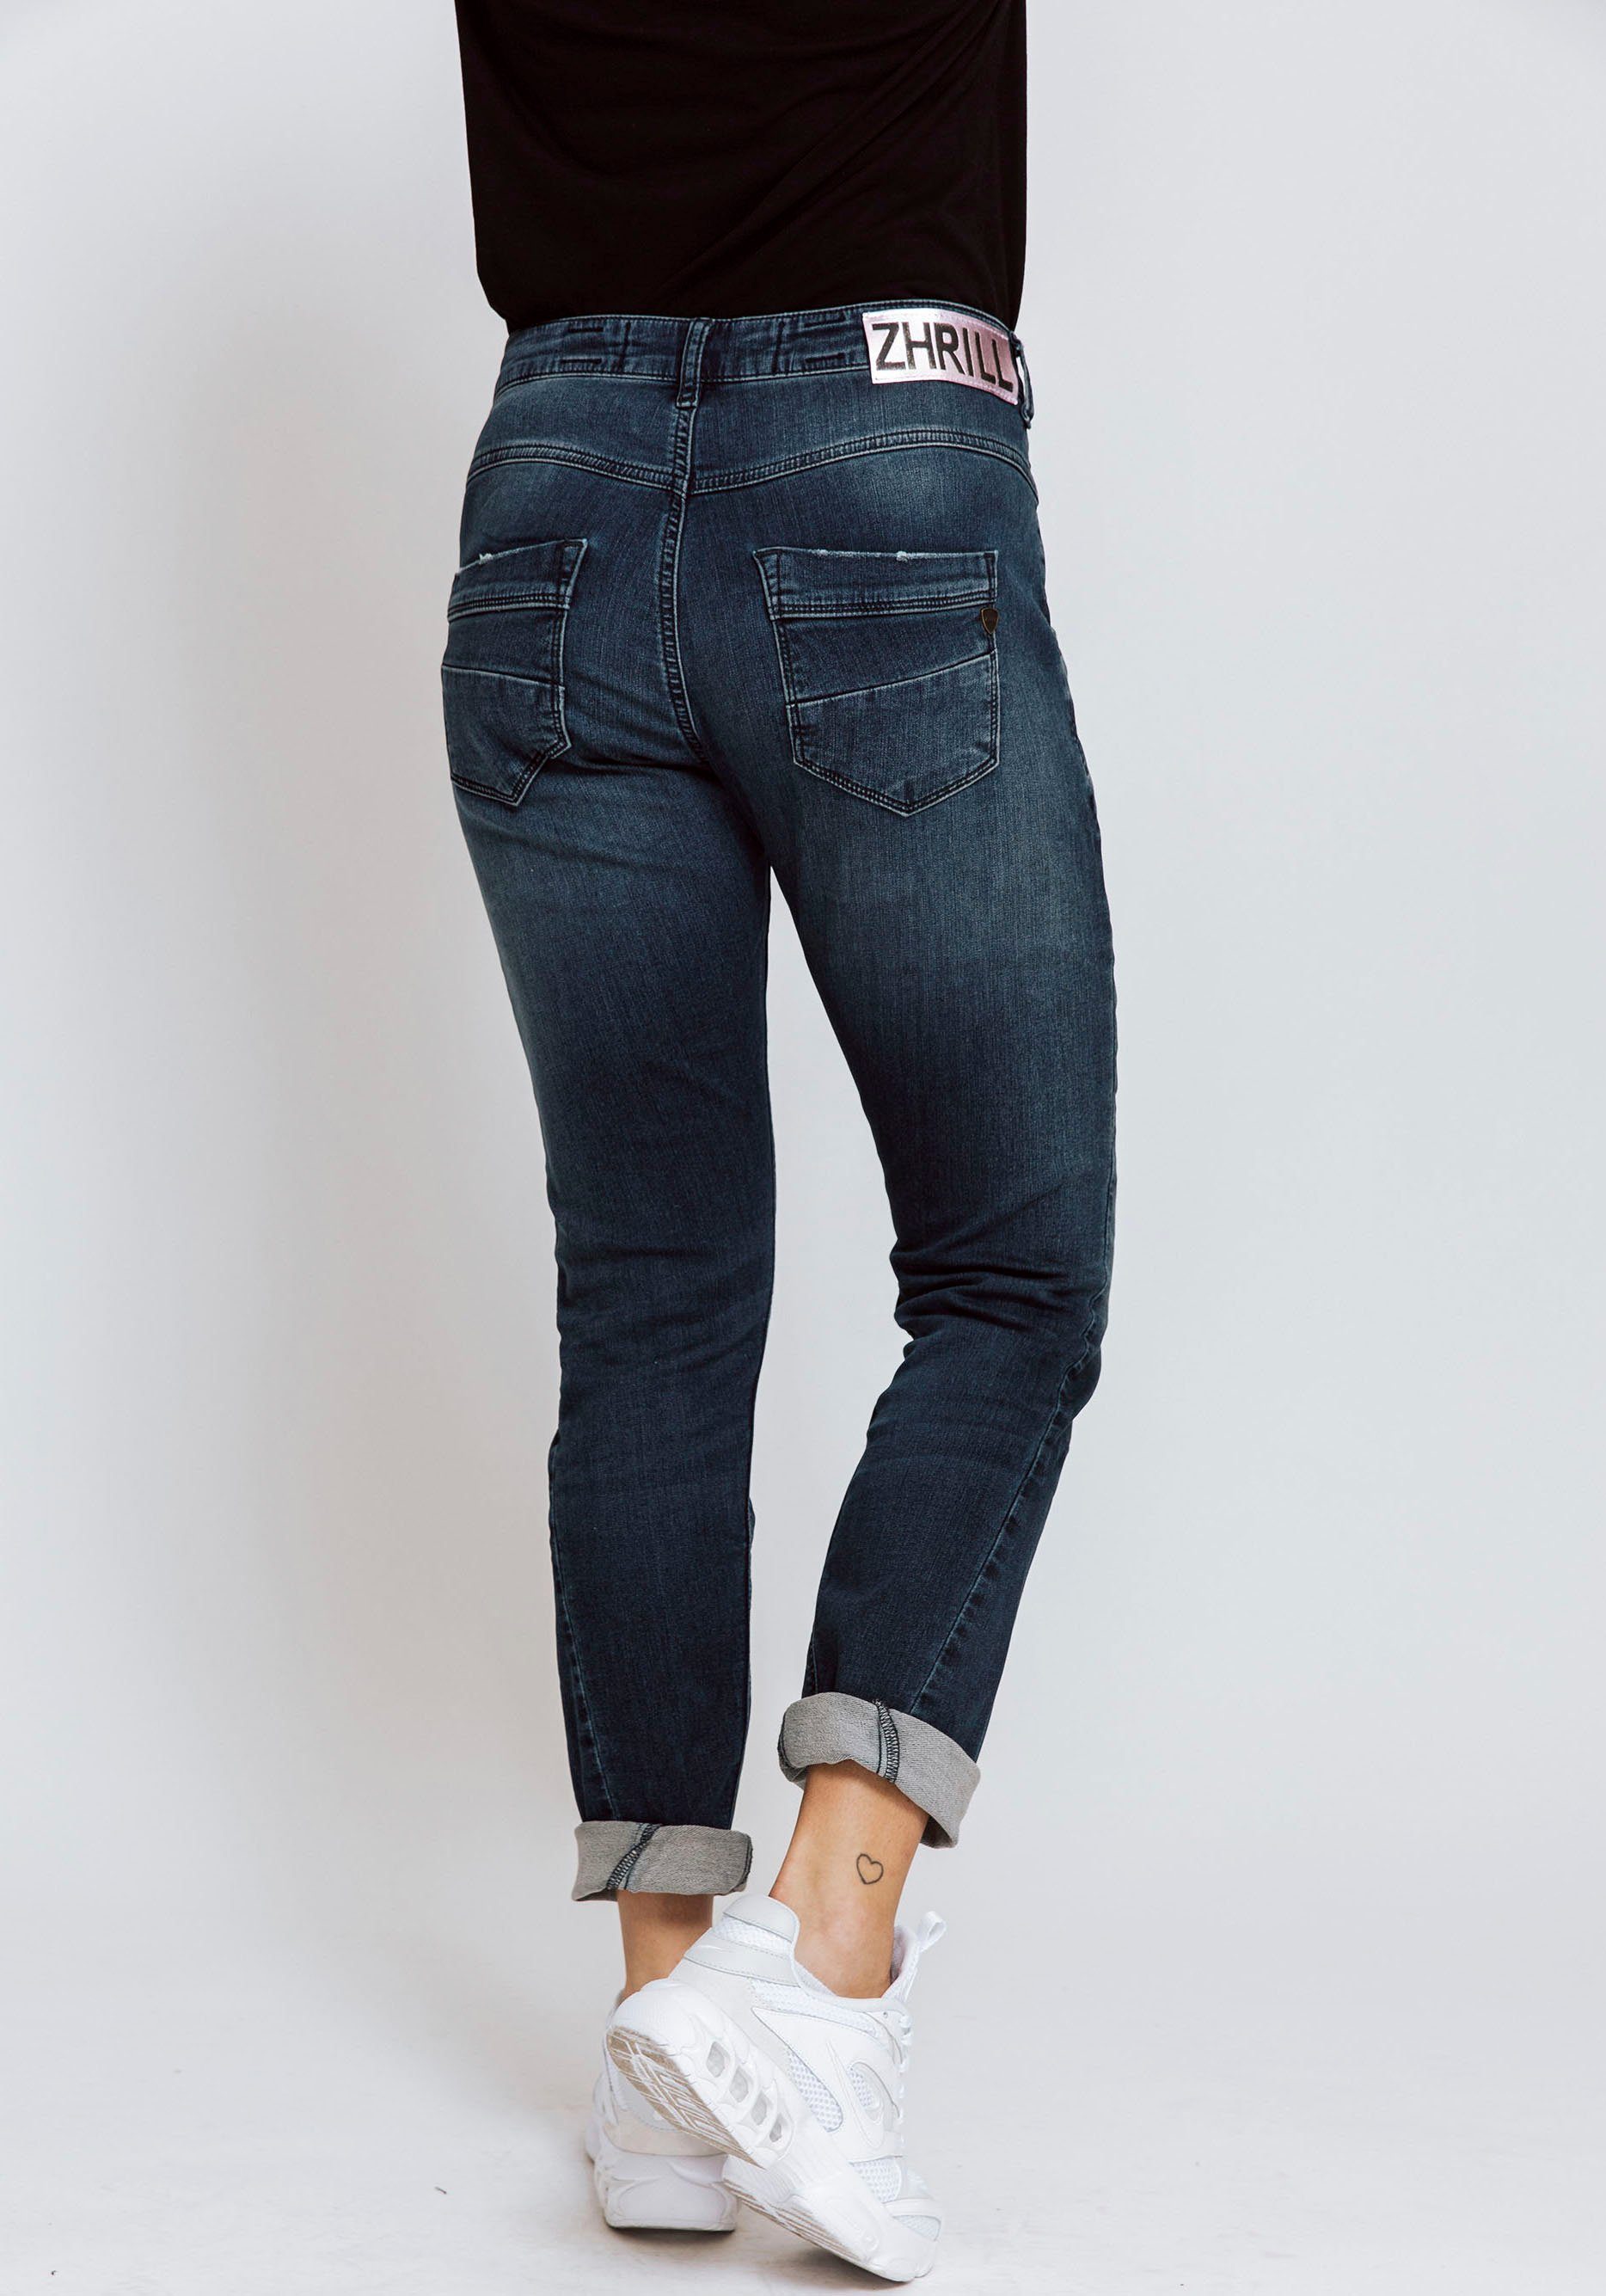 Damen Jeans Zhrill Ankle-Jeans AMY mit sichtbarer Knopfleiste